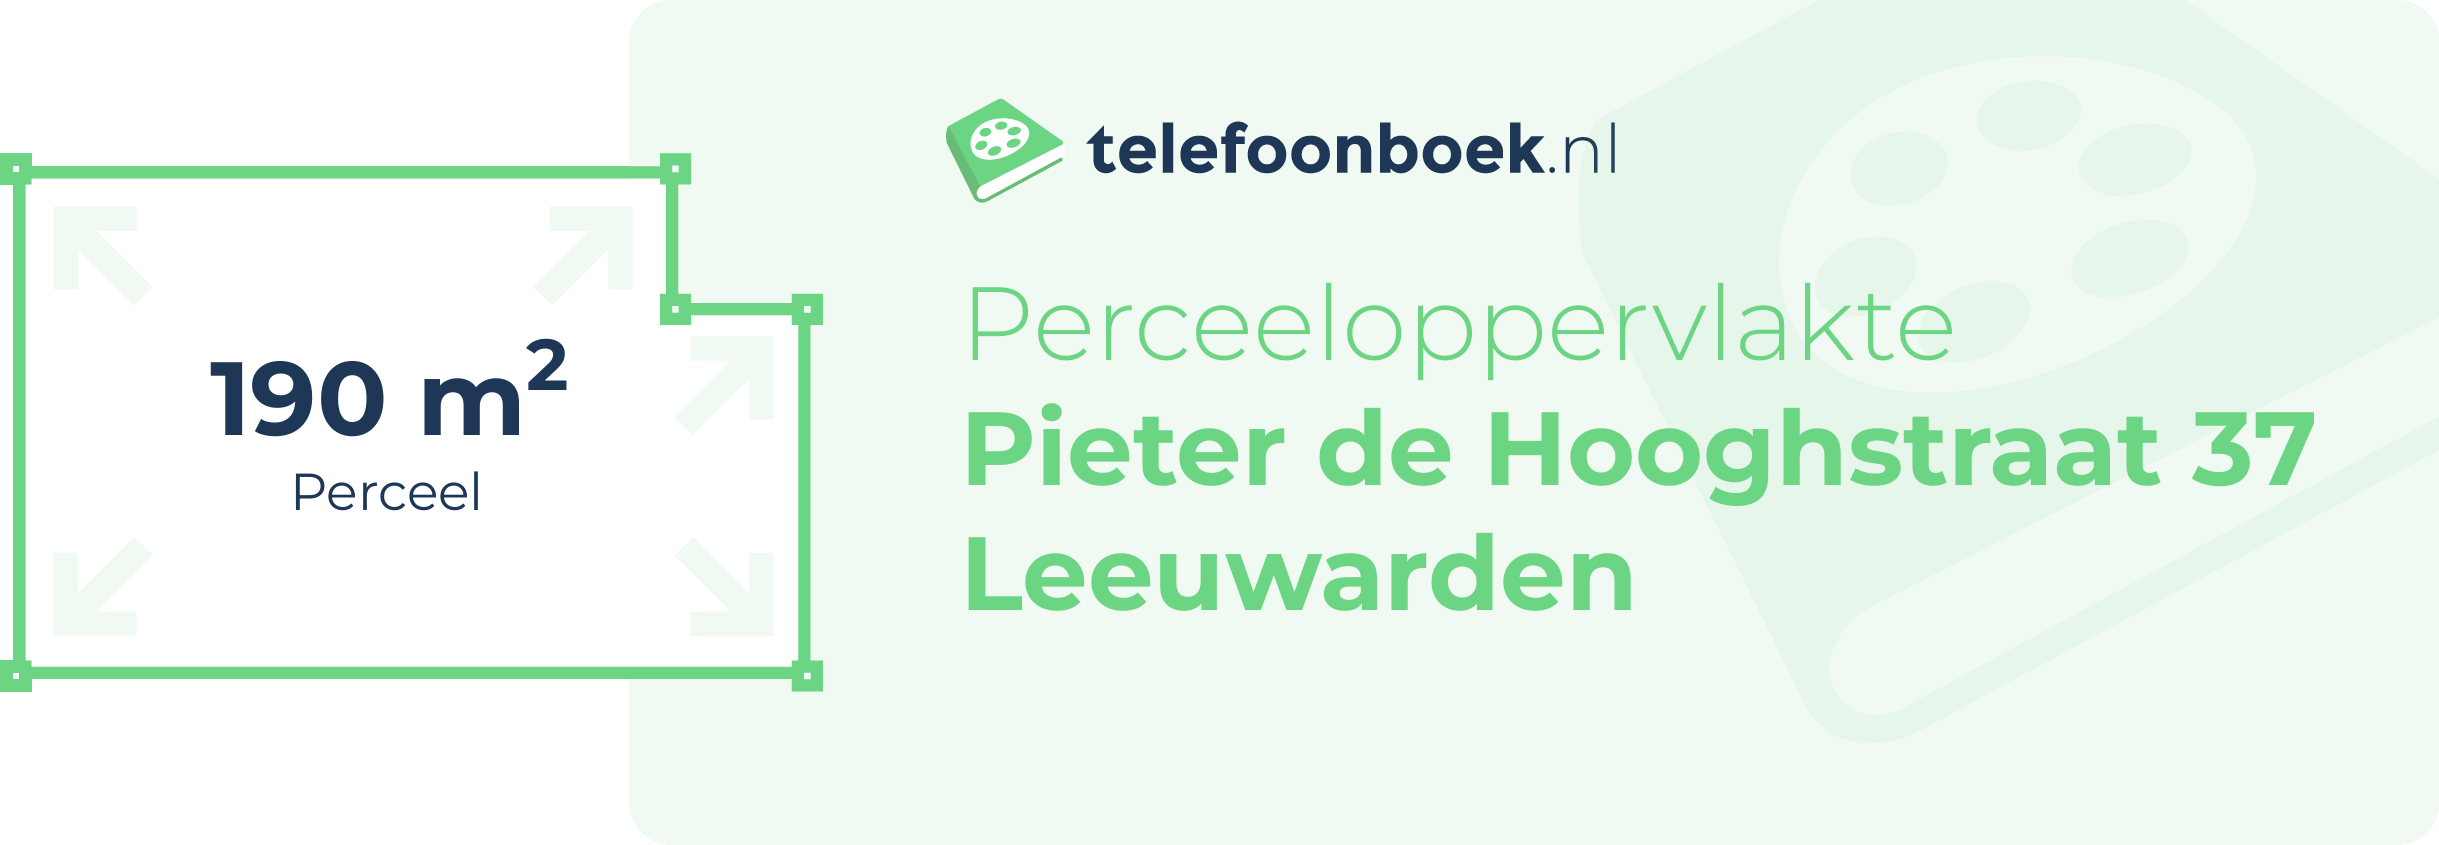 Perceeloppervlakte Pieter De Hooghstraat 37 Leeuwarden